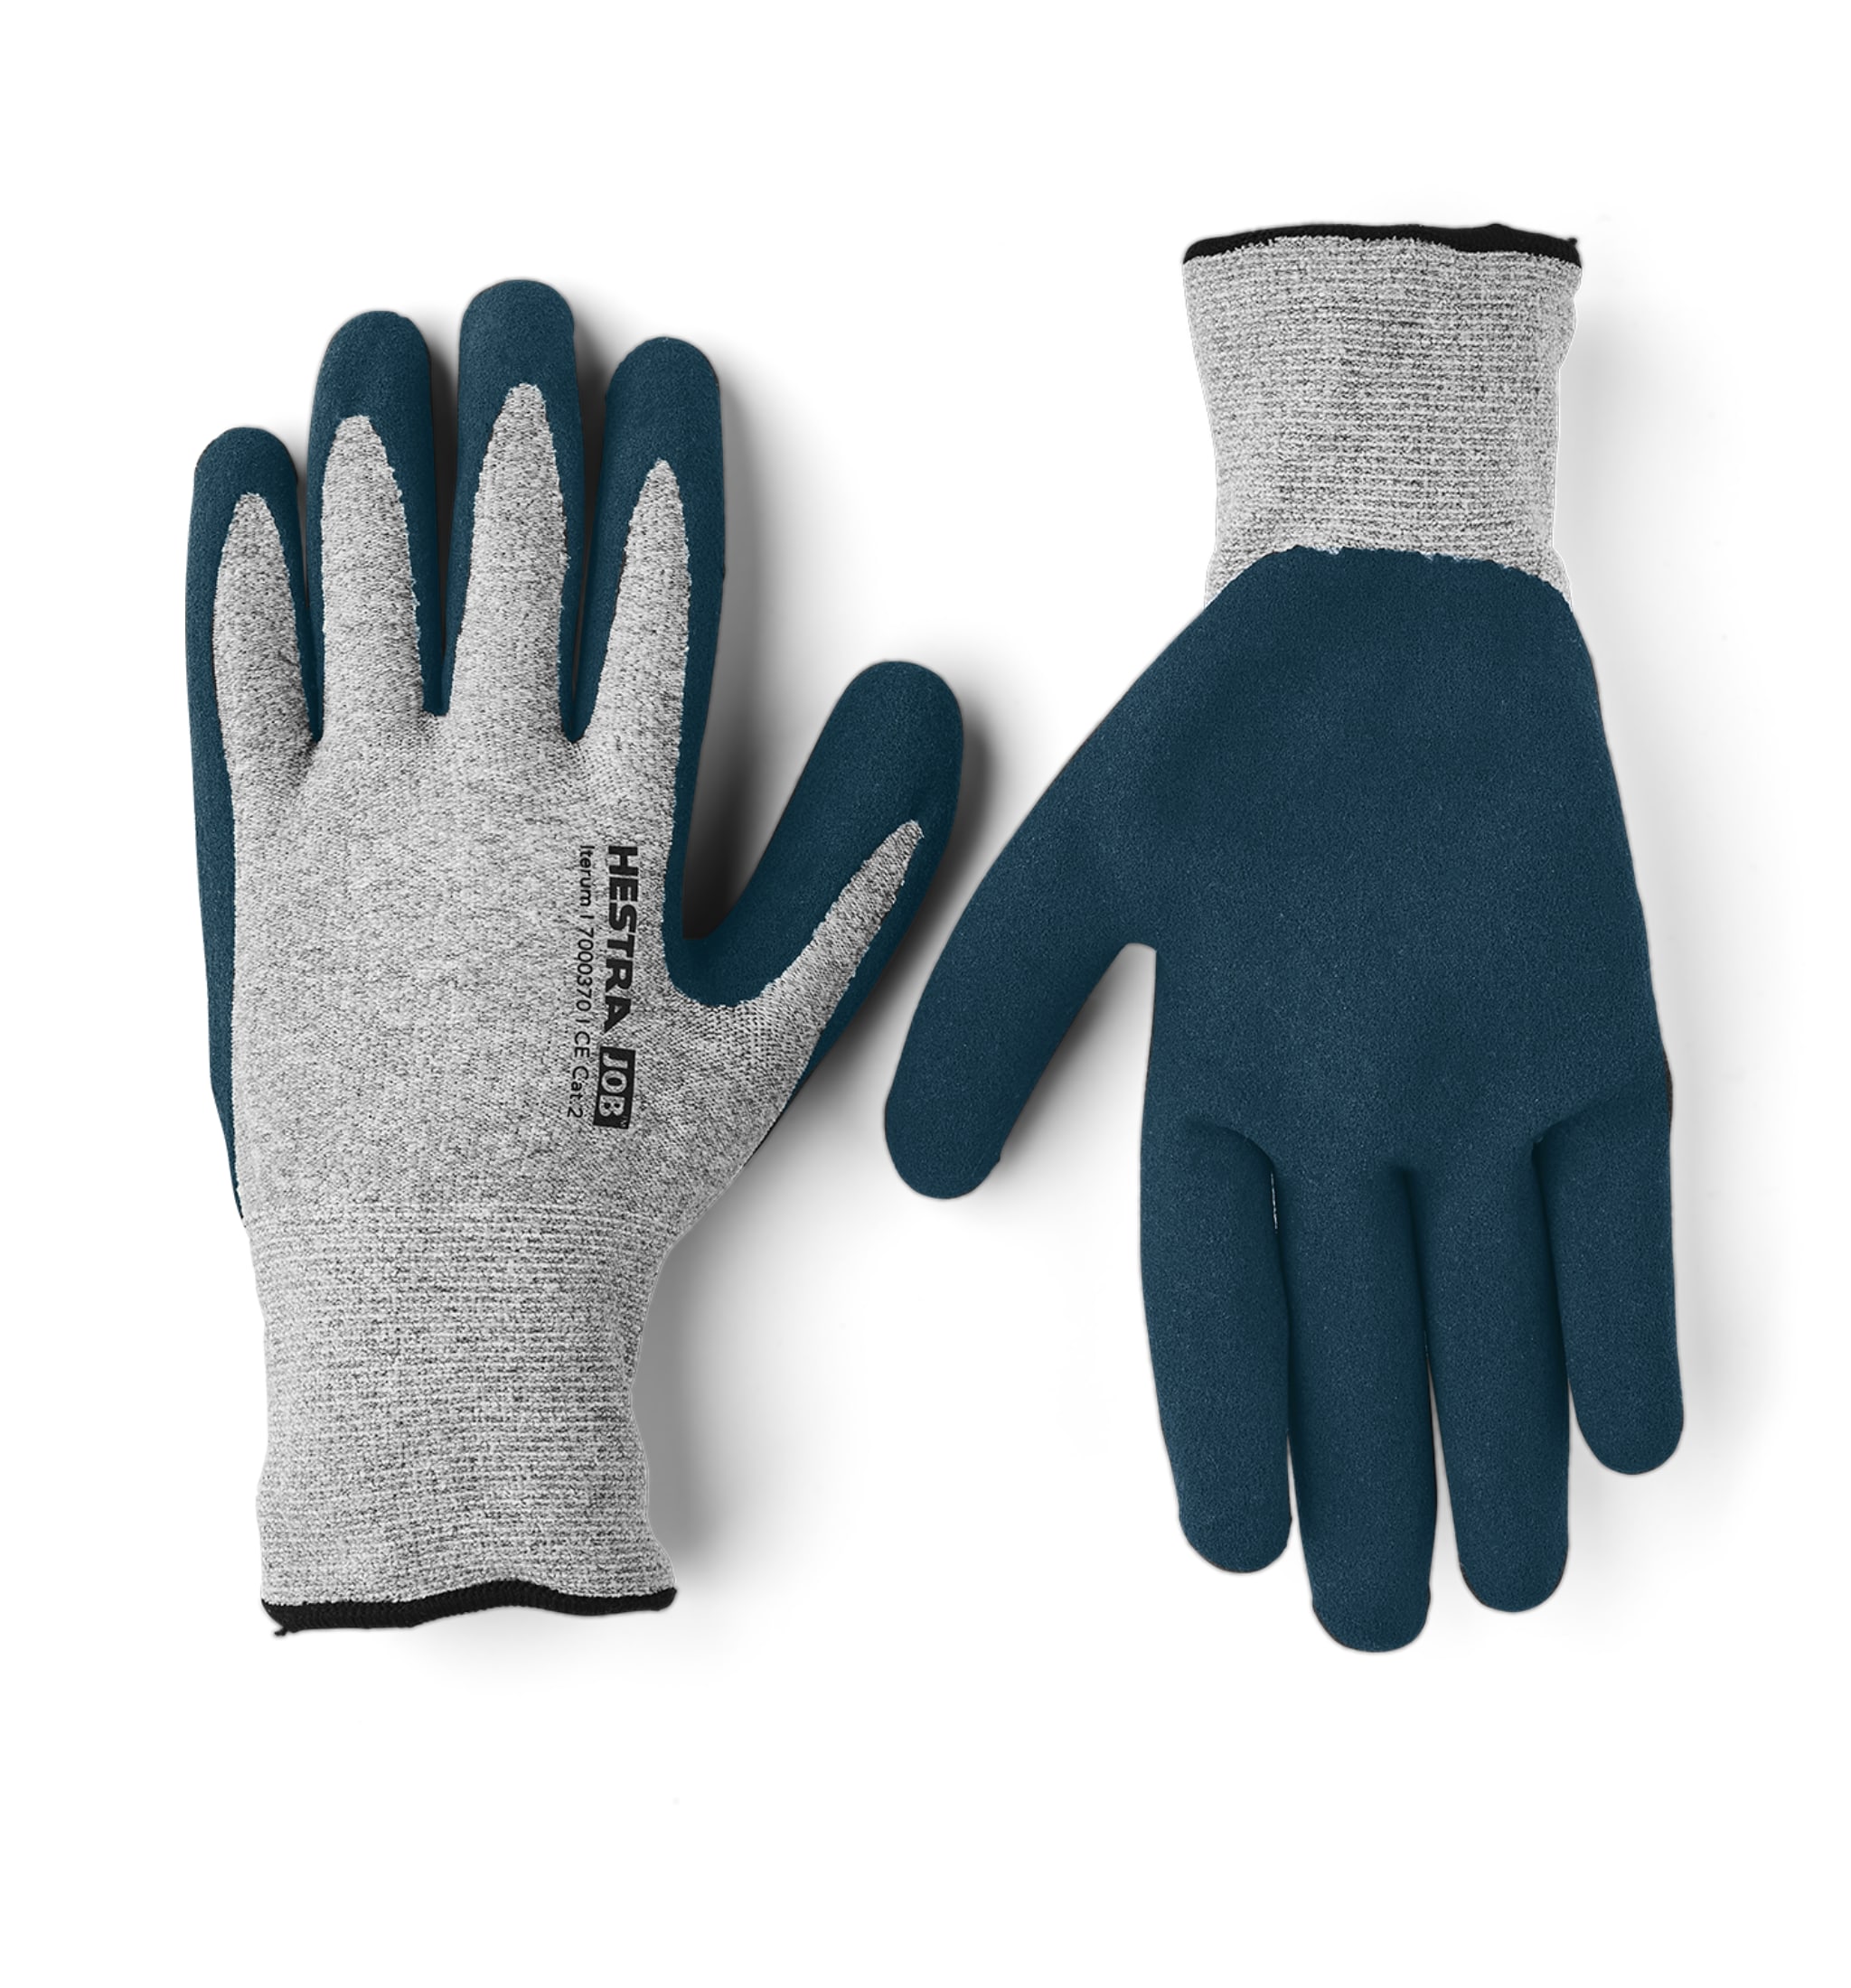 Literium thin Working glove - Grey/Navy